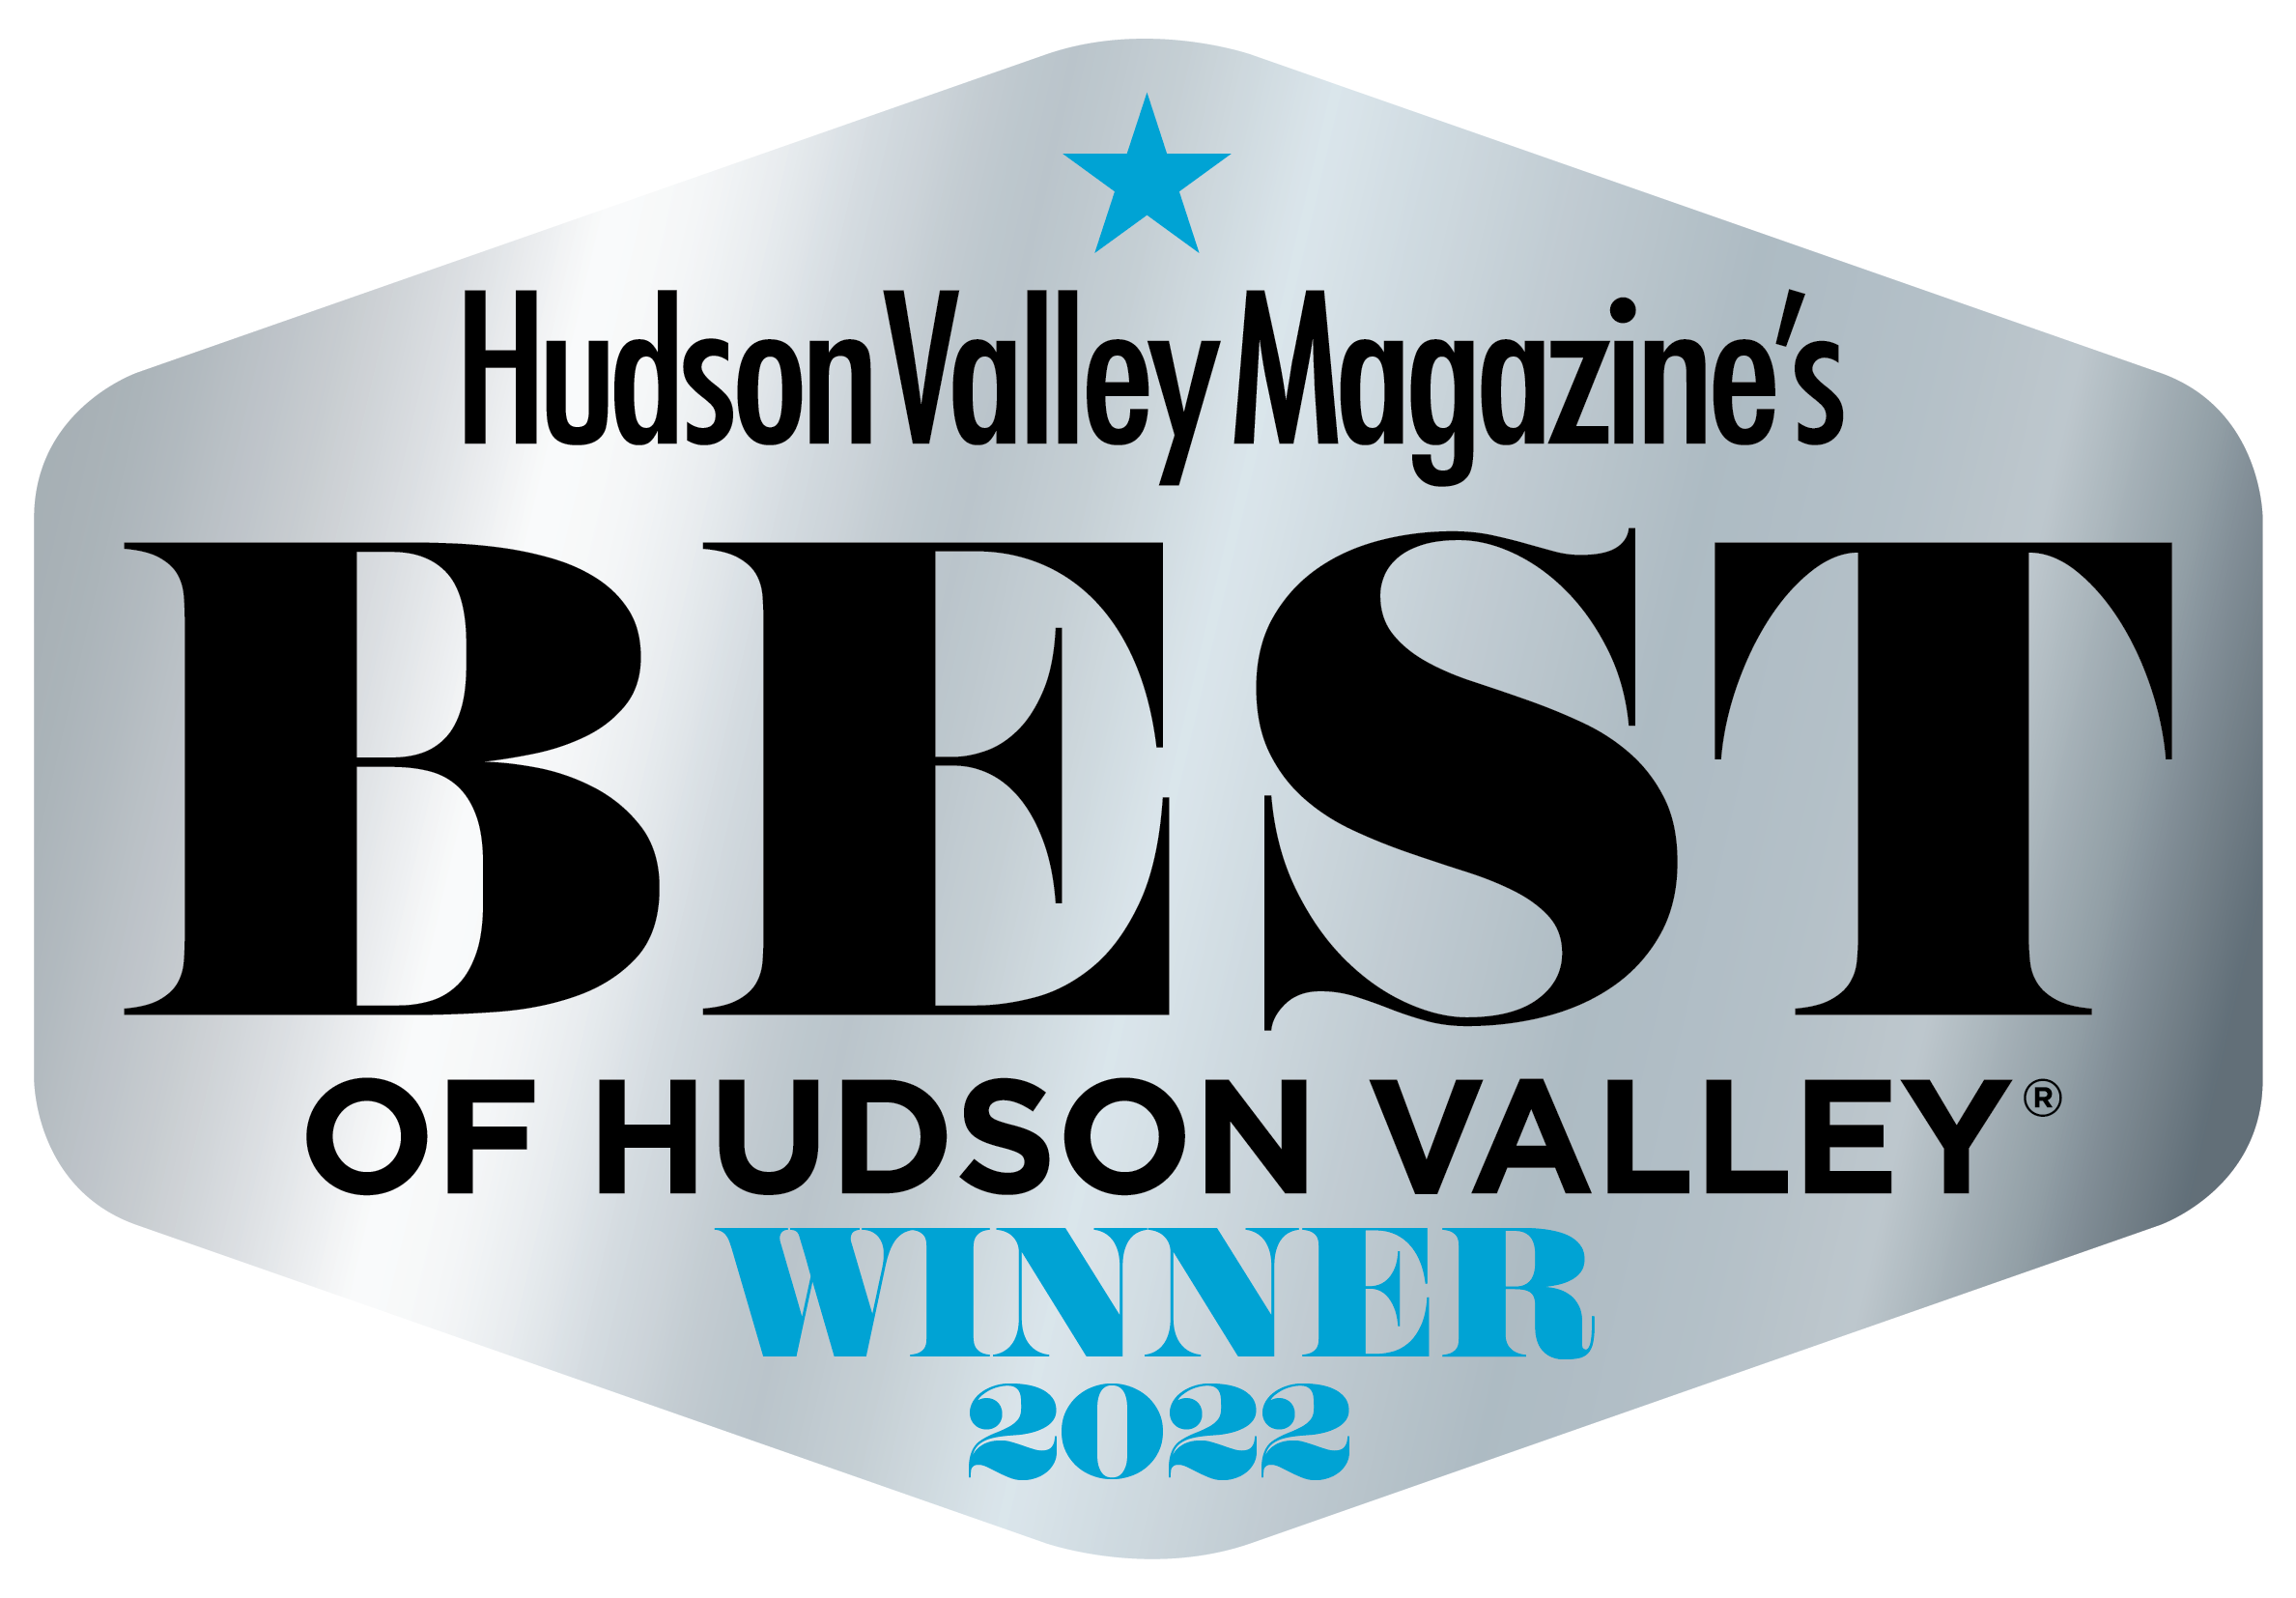 Best of Hudson Valley Winner 2022